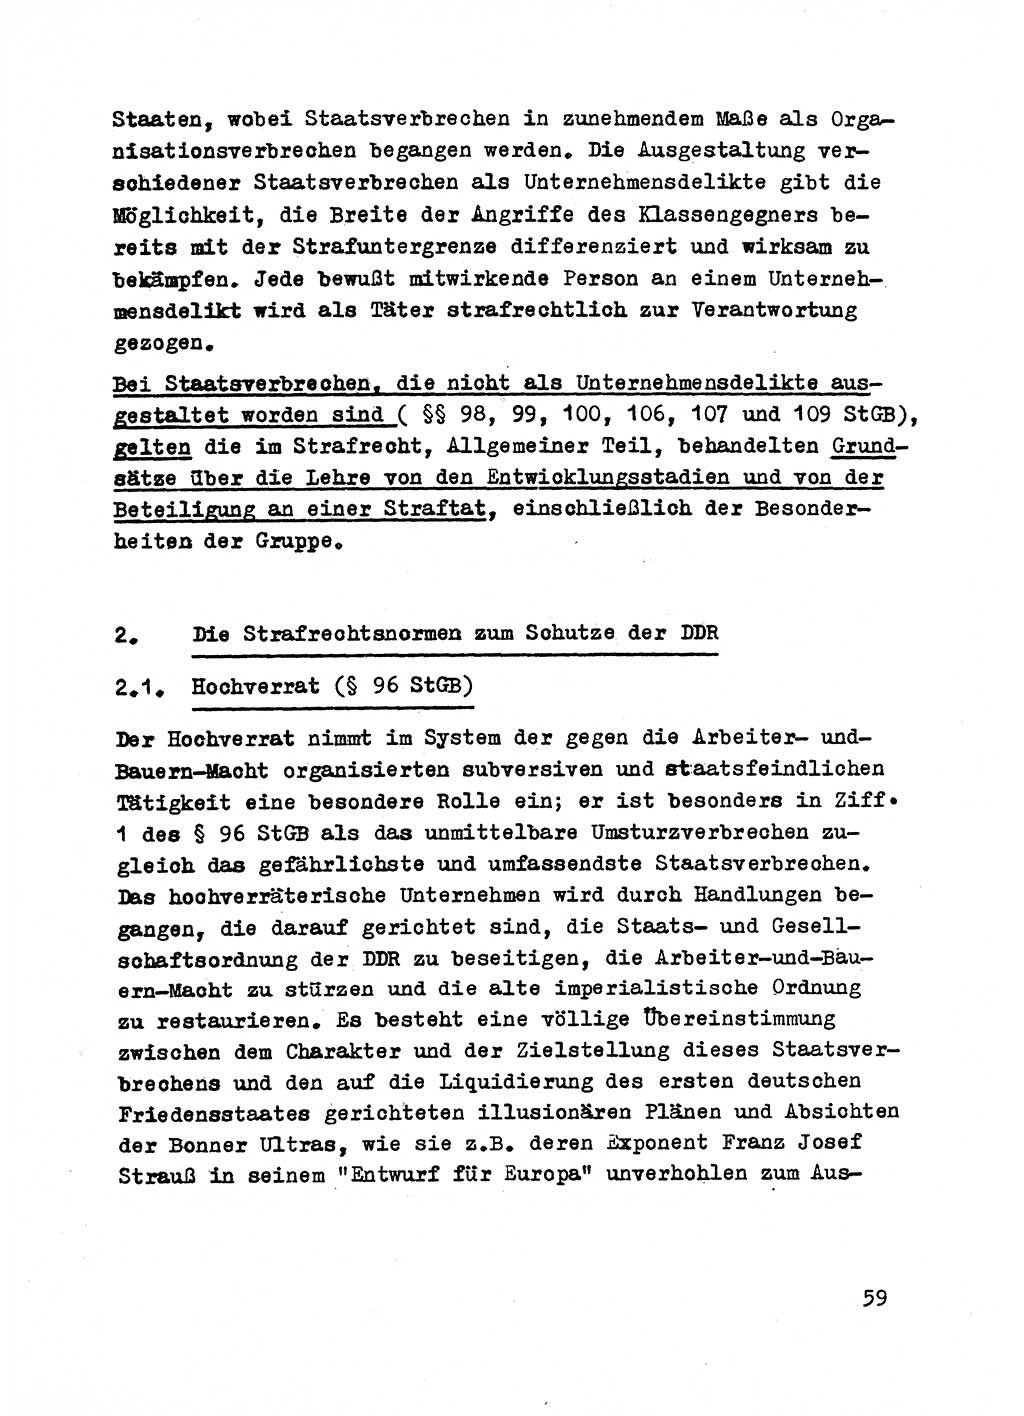 Strafrecht der DDR (Deutsche Demokratische Republik), Besonderer Teil, Lehrmaterial, Heft 2 1969, Seite 59 (Strafr. DDR BT Lehrmat. H. 2 1969, S. 59)